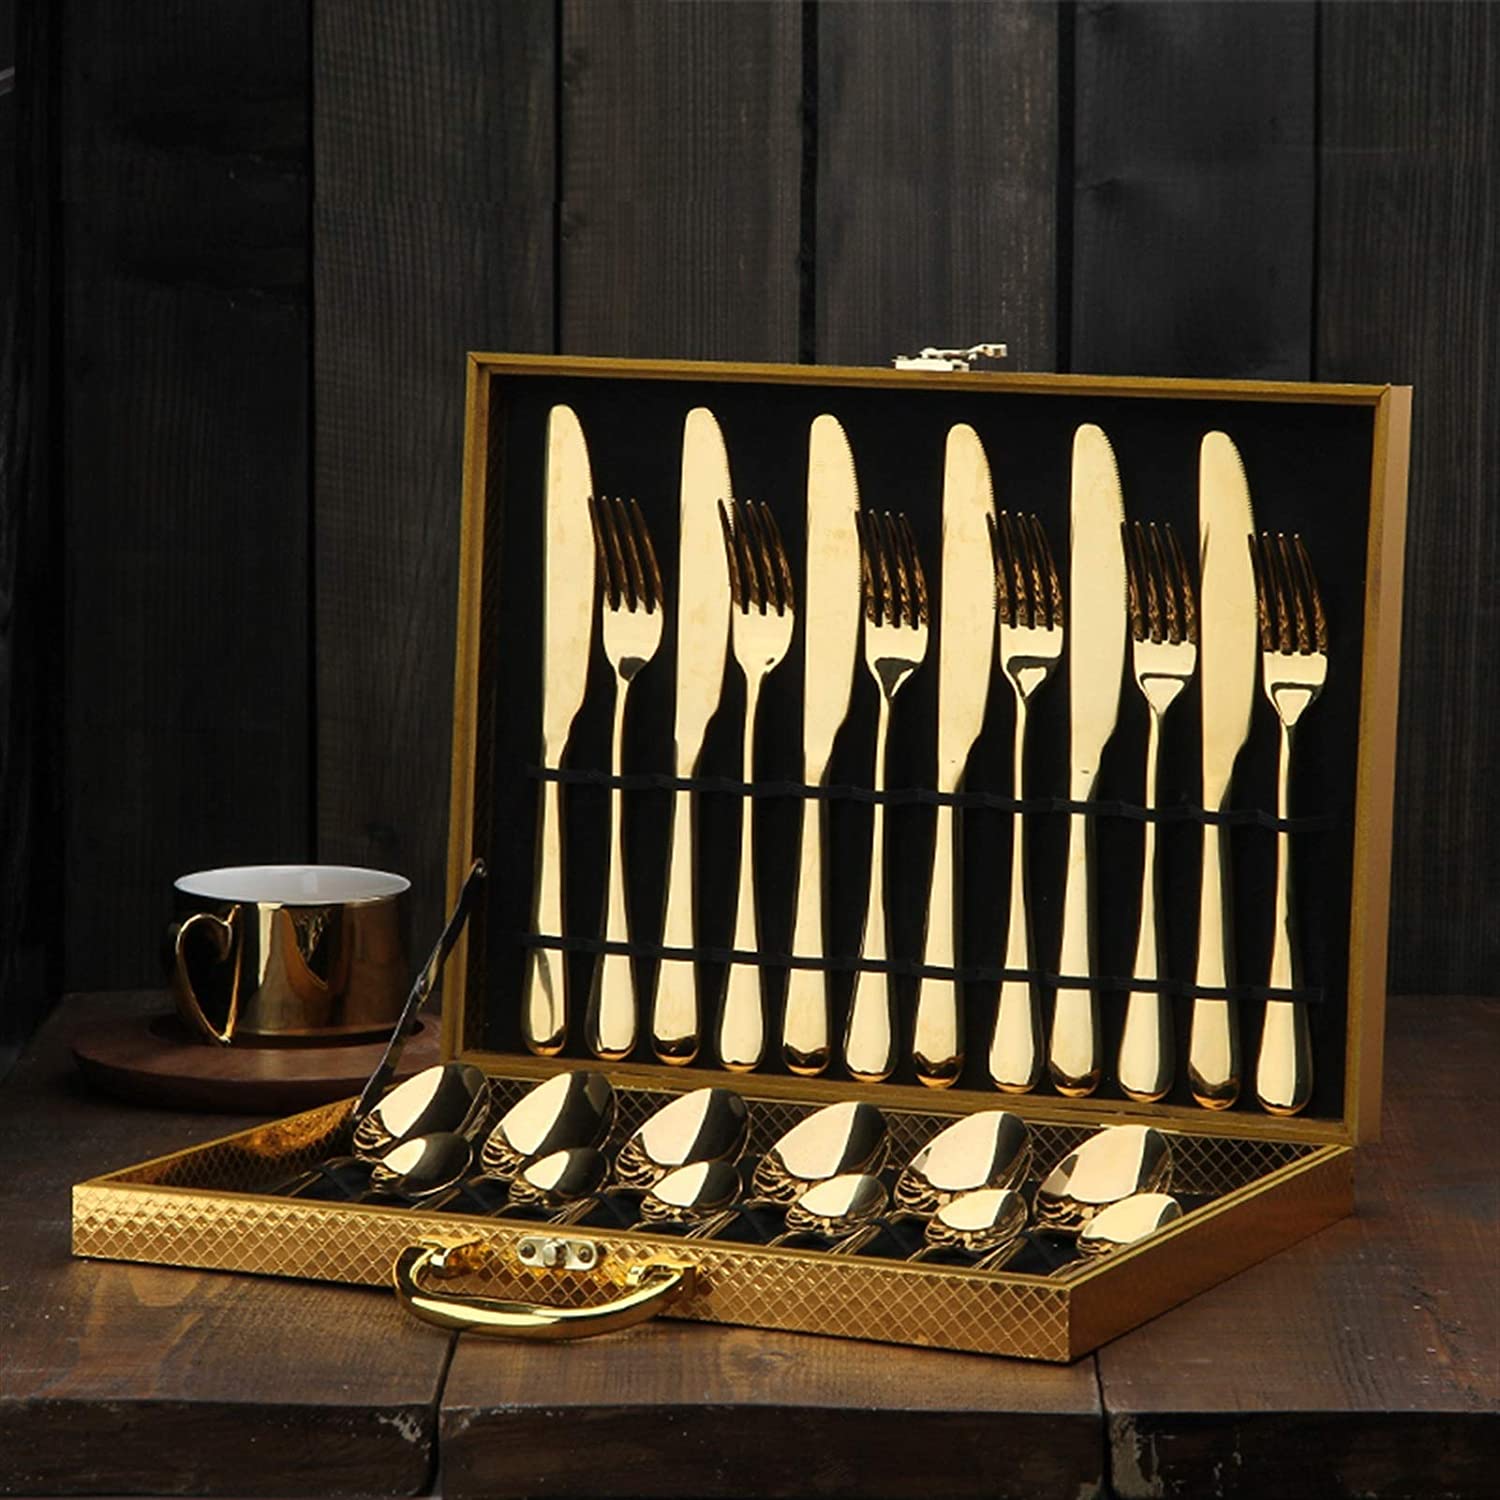 Abu Dhabi Cutlery Set Cutlery - Venetto Design Venettodesign.com